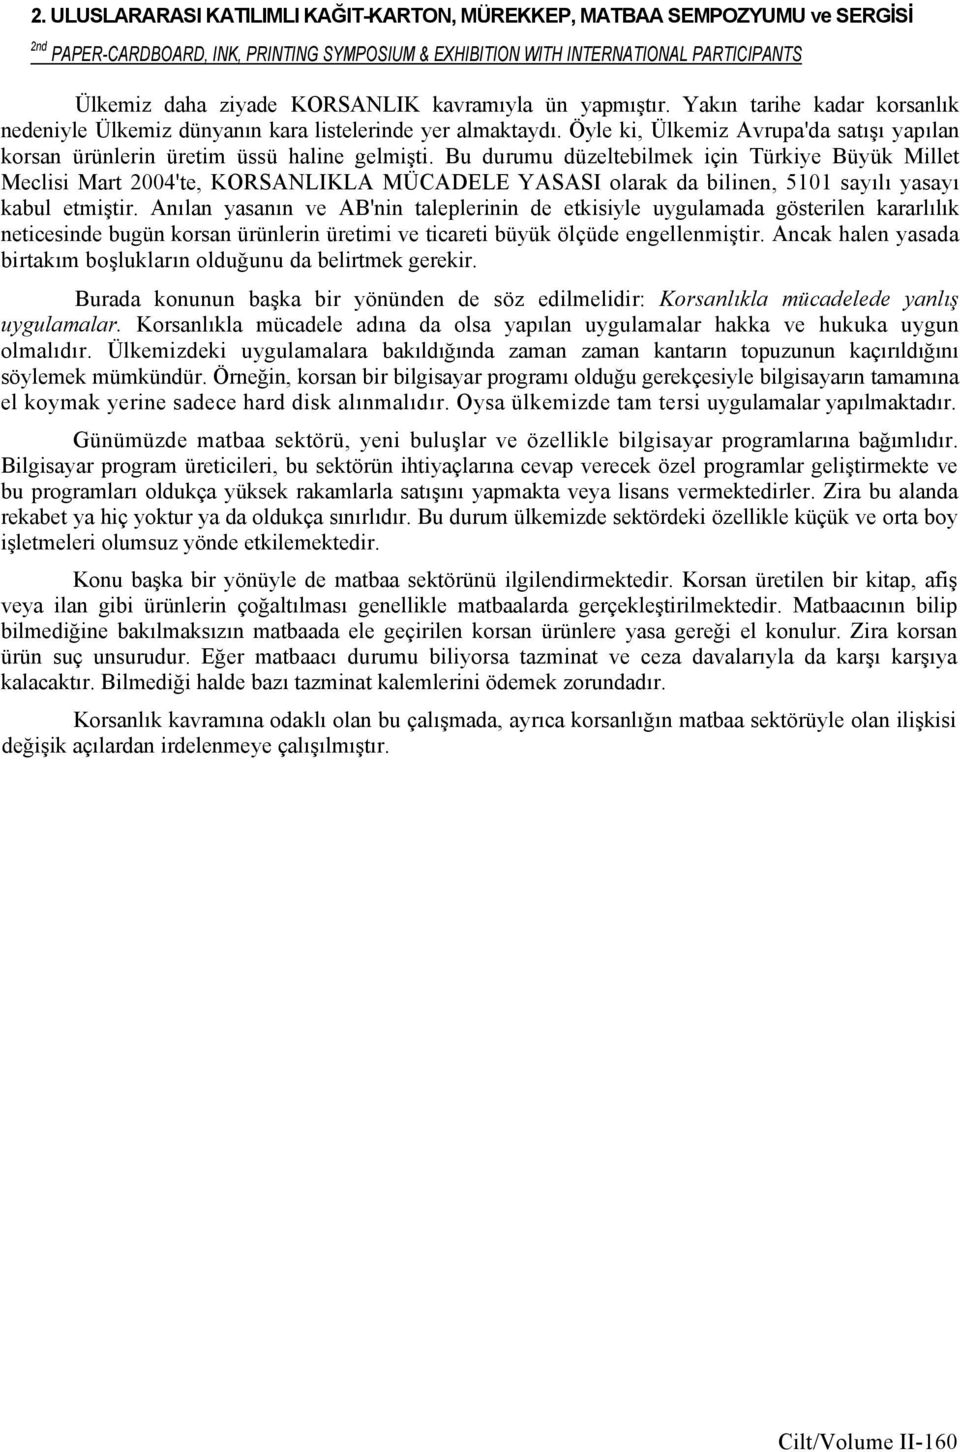 Bu durumu düzeltebilmek için Türkiye Büyük Millet Meclisi Mart 2004'te, KORSANLIKLA MÜCADELE YASASI olarak da bilinen, 5101 sayılı yasayı kabul etmiştir.